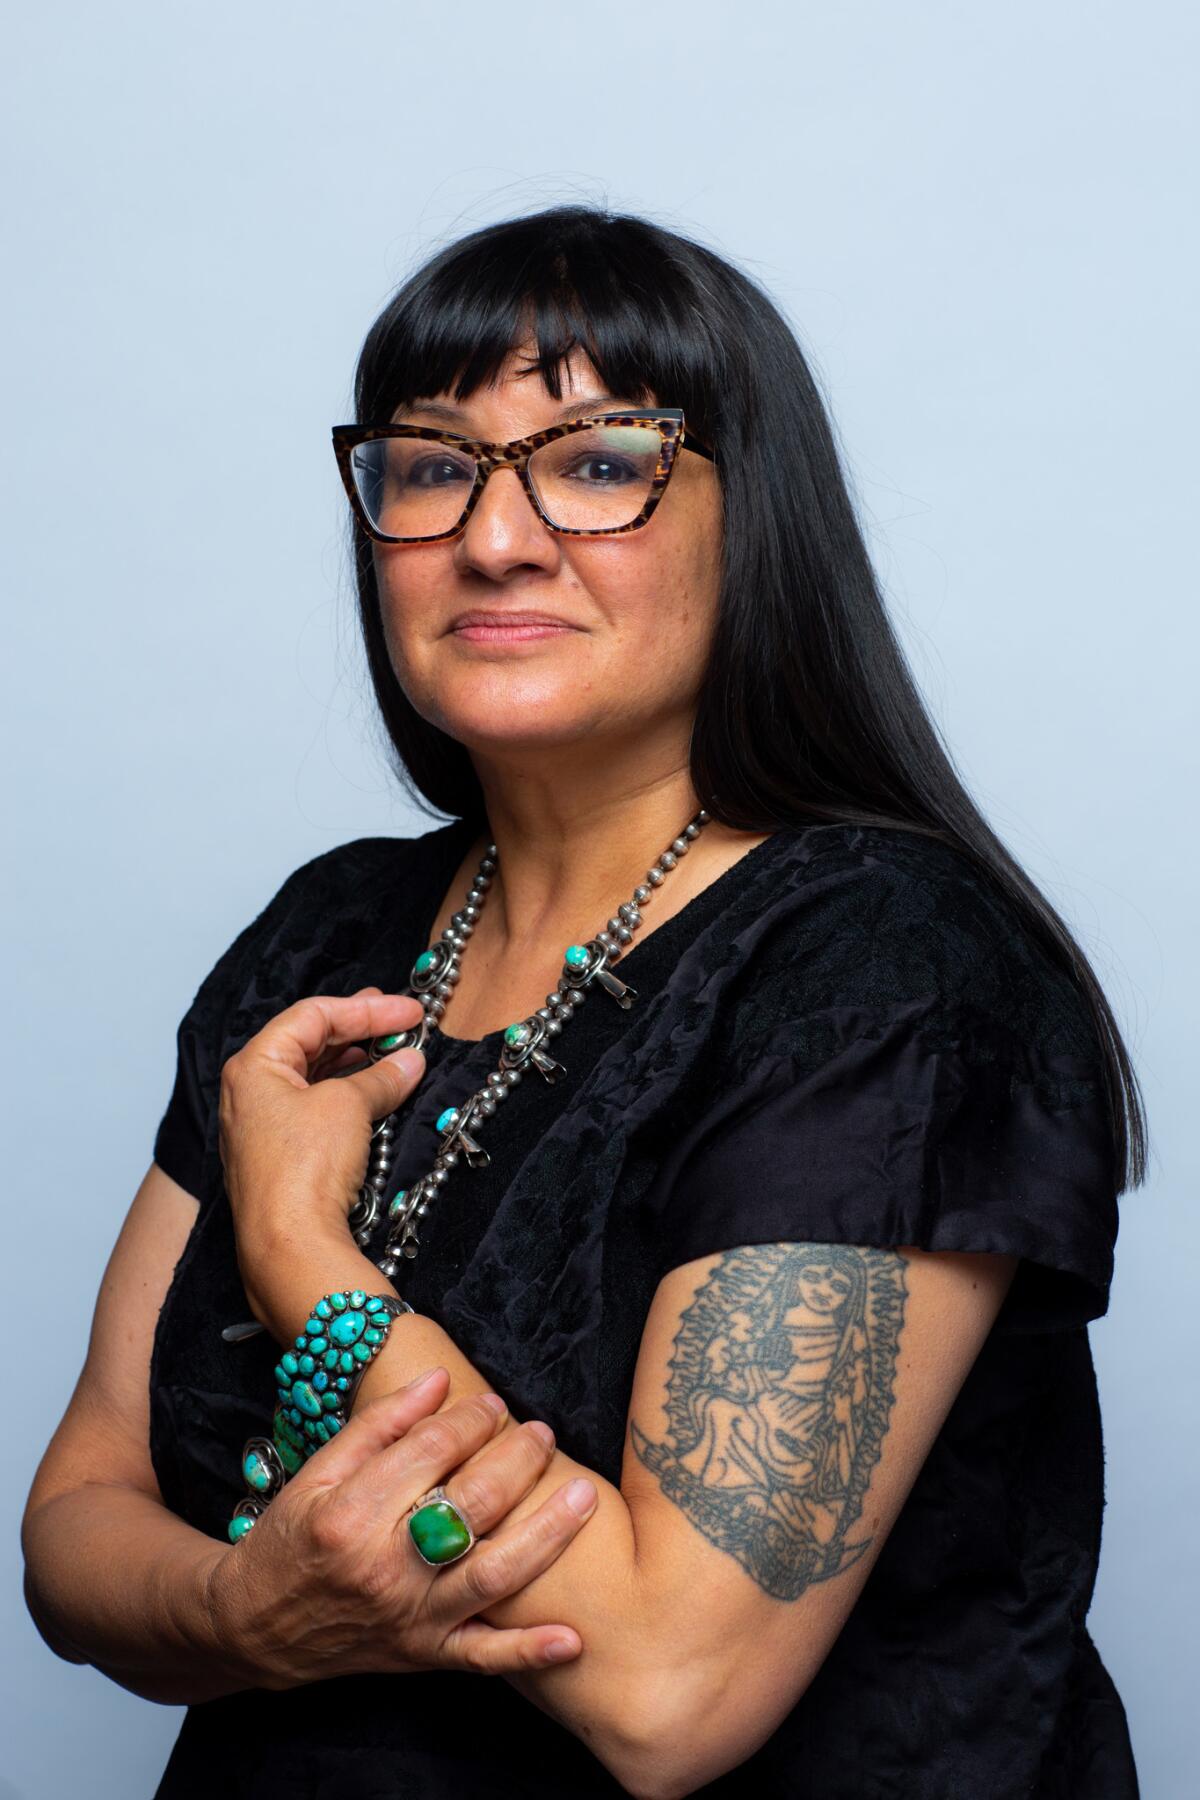 La autora Sandra Cisneros elogió "American Dirt"de Jeanine Cummins mucho antes de que una tormenta de controversias la rodeara.